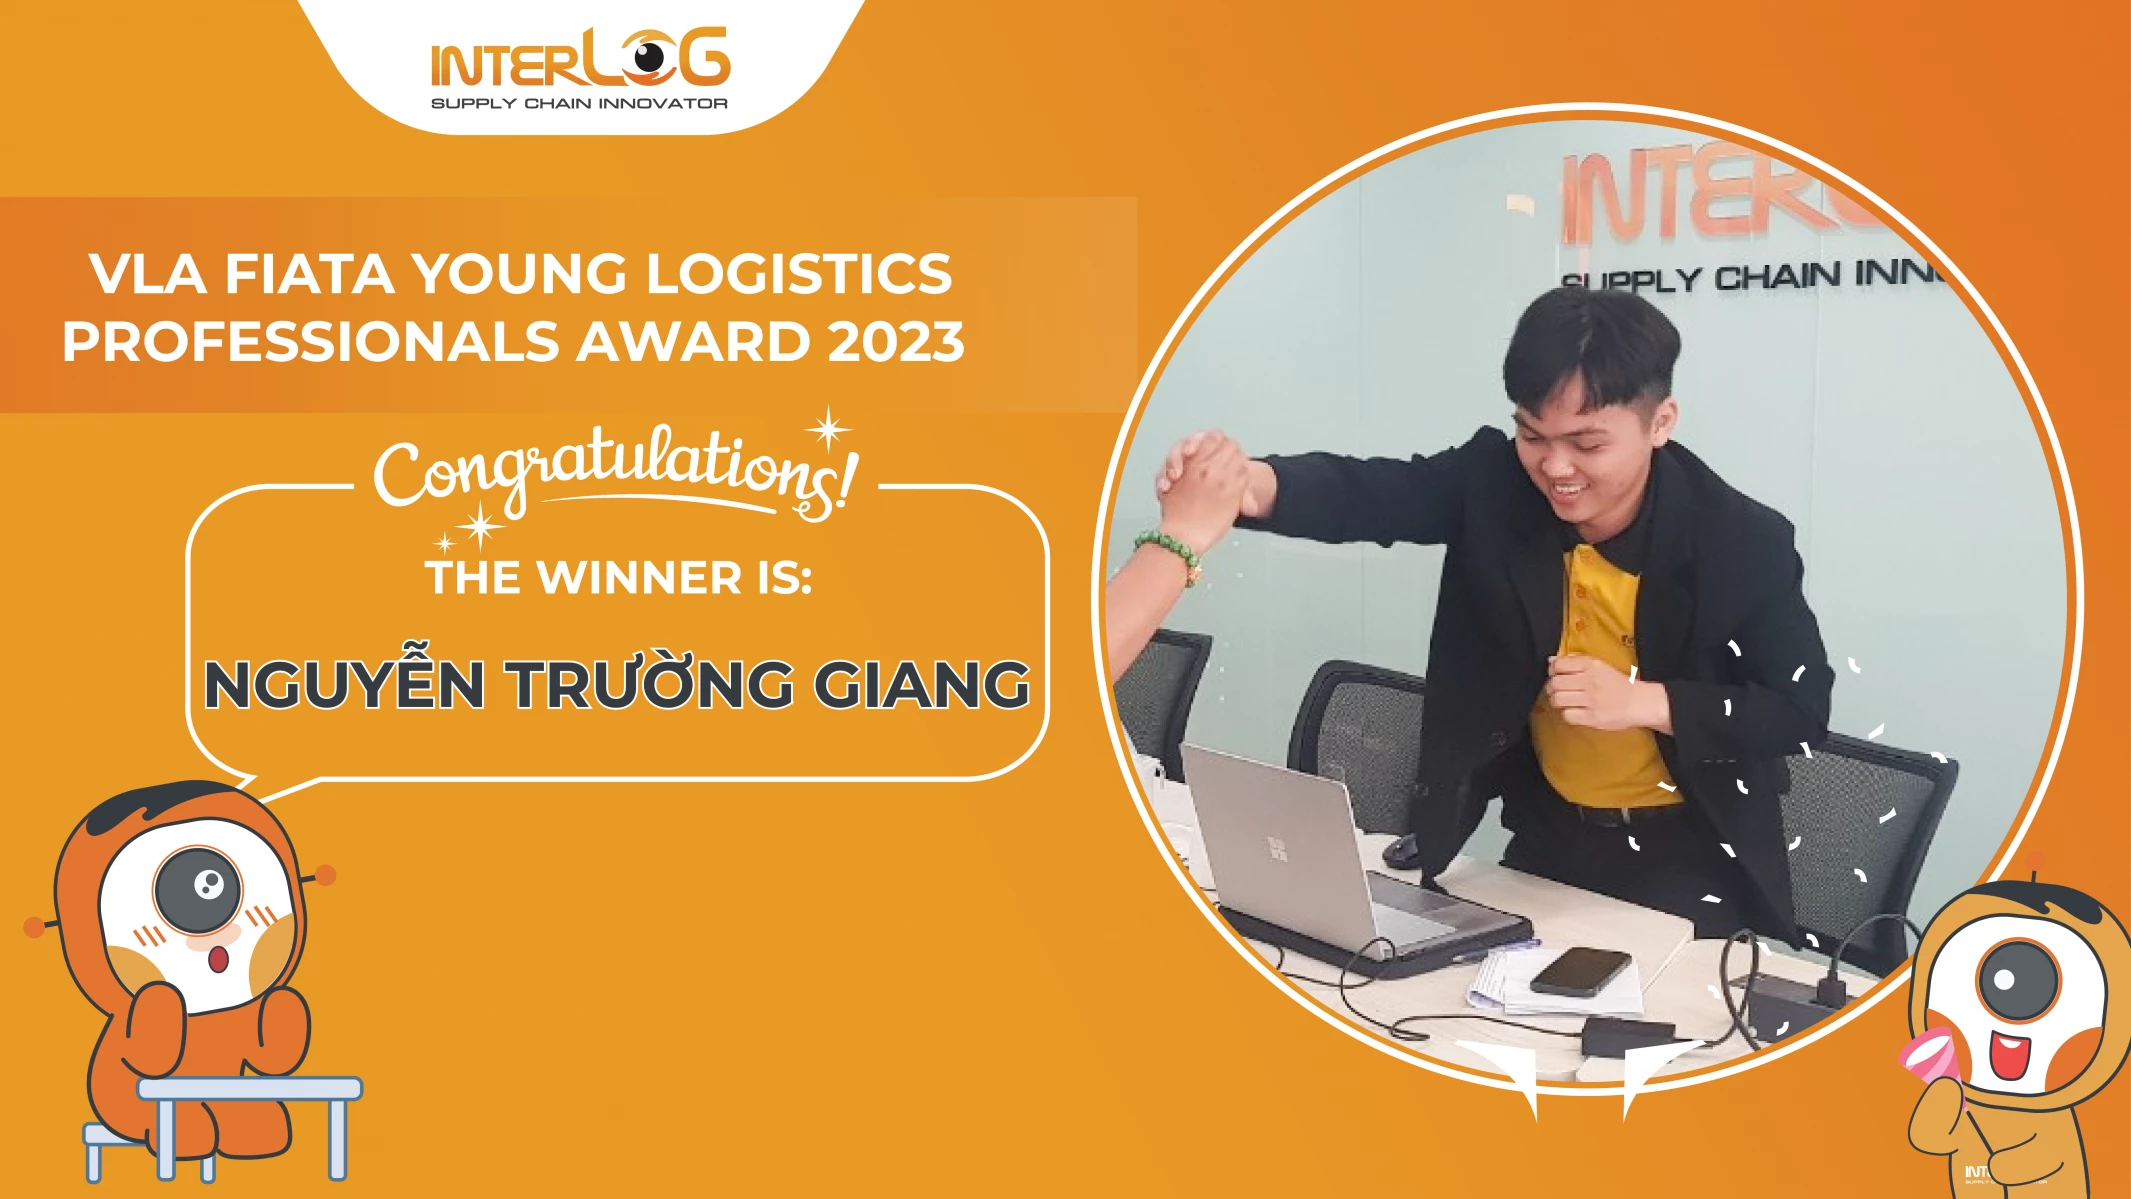 InterLOG won VLA Fiata Young logistics Professionals Award 2023